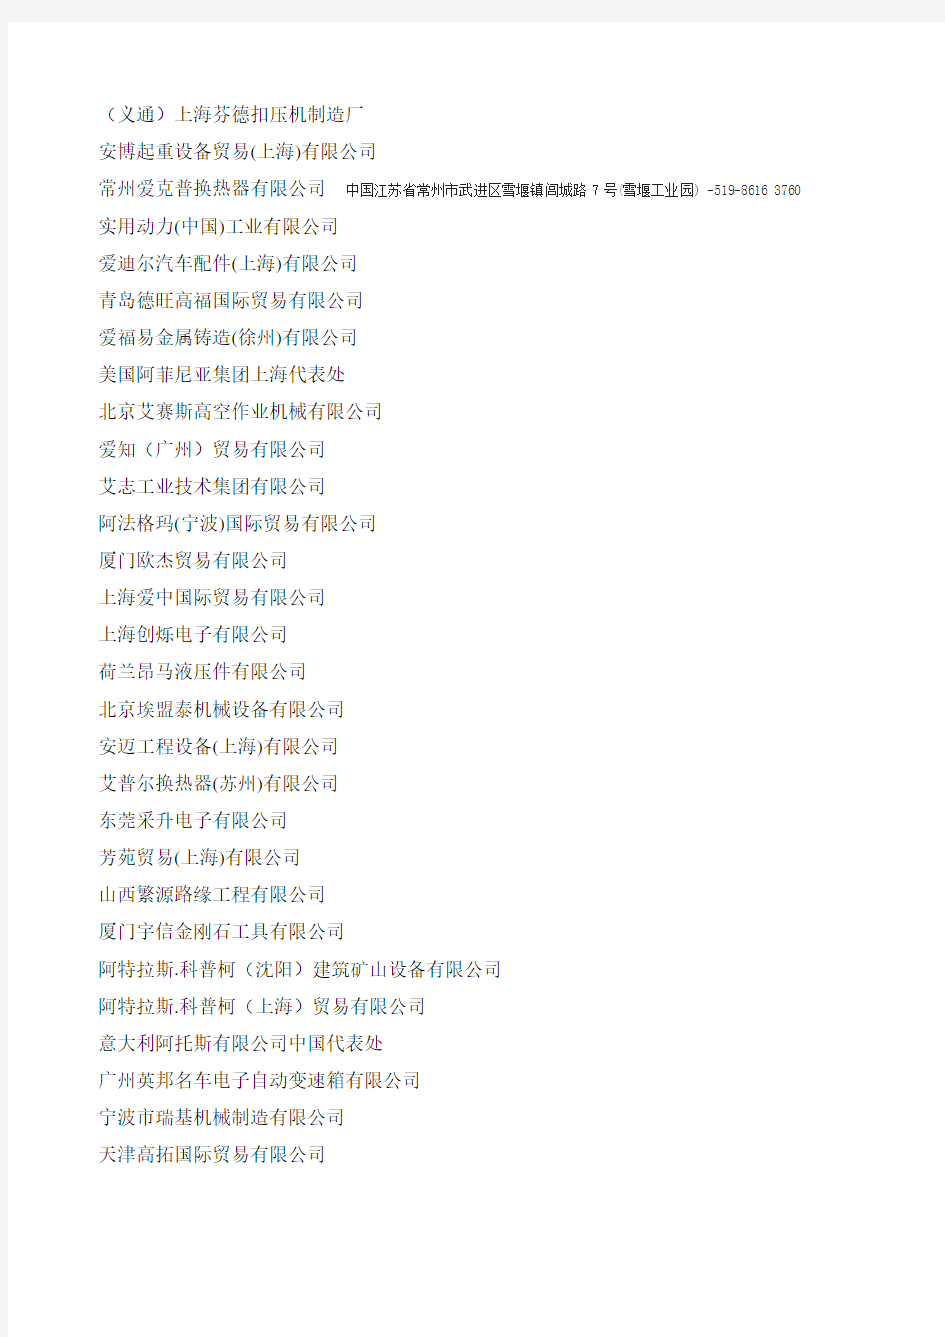 上海宝马展名单